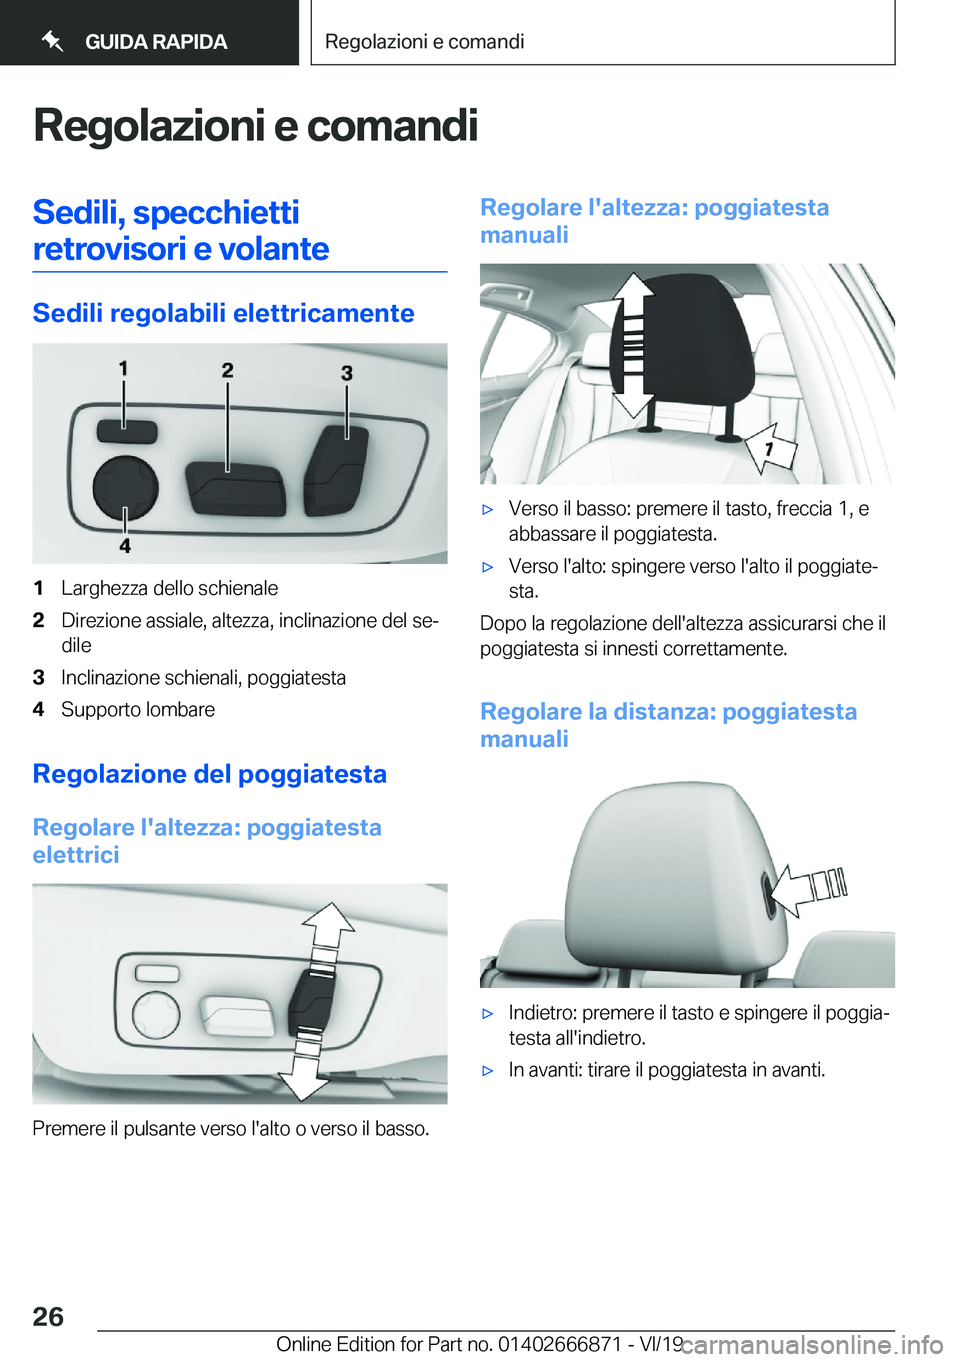 BMW X4 M 2020  Libretti Di Uso E manutenzione (in Italian) �R�e�g�o�l�a�z�i�o�n�i��e��c�o�m�a�n�d�i�S�e�d�i�l�i�,��s�p�e�c�c�h�i�e�t�t�i�r�e�t�r�o�v�i�s�o�r�i��e��v�o�l�a�n�t�e
�S�e�d�i�l�i��r�e�g�o�l�a�b�i�l�i��e�l�e�t�t�r�i�c�a�m�e�n�t�e
�1�L�a�r�g�h